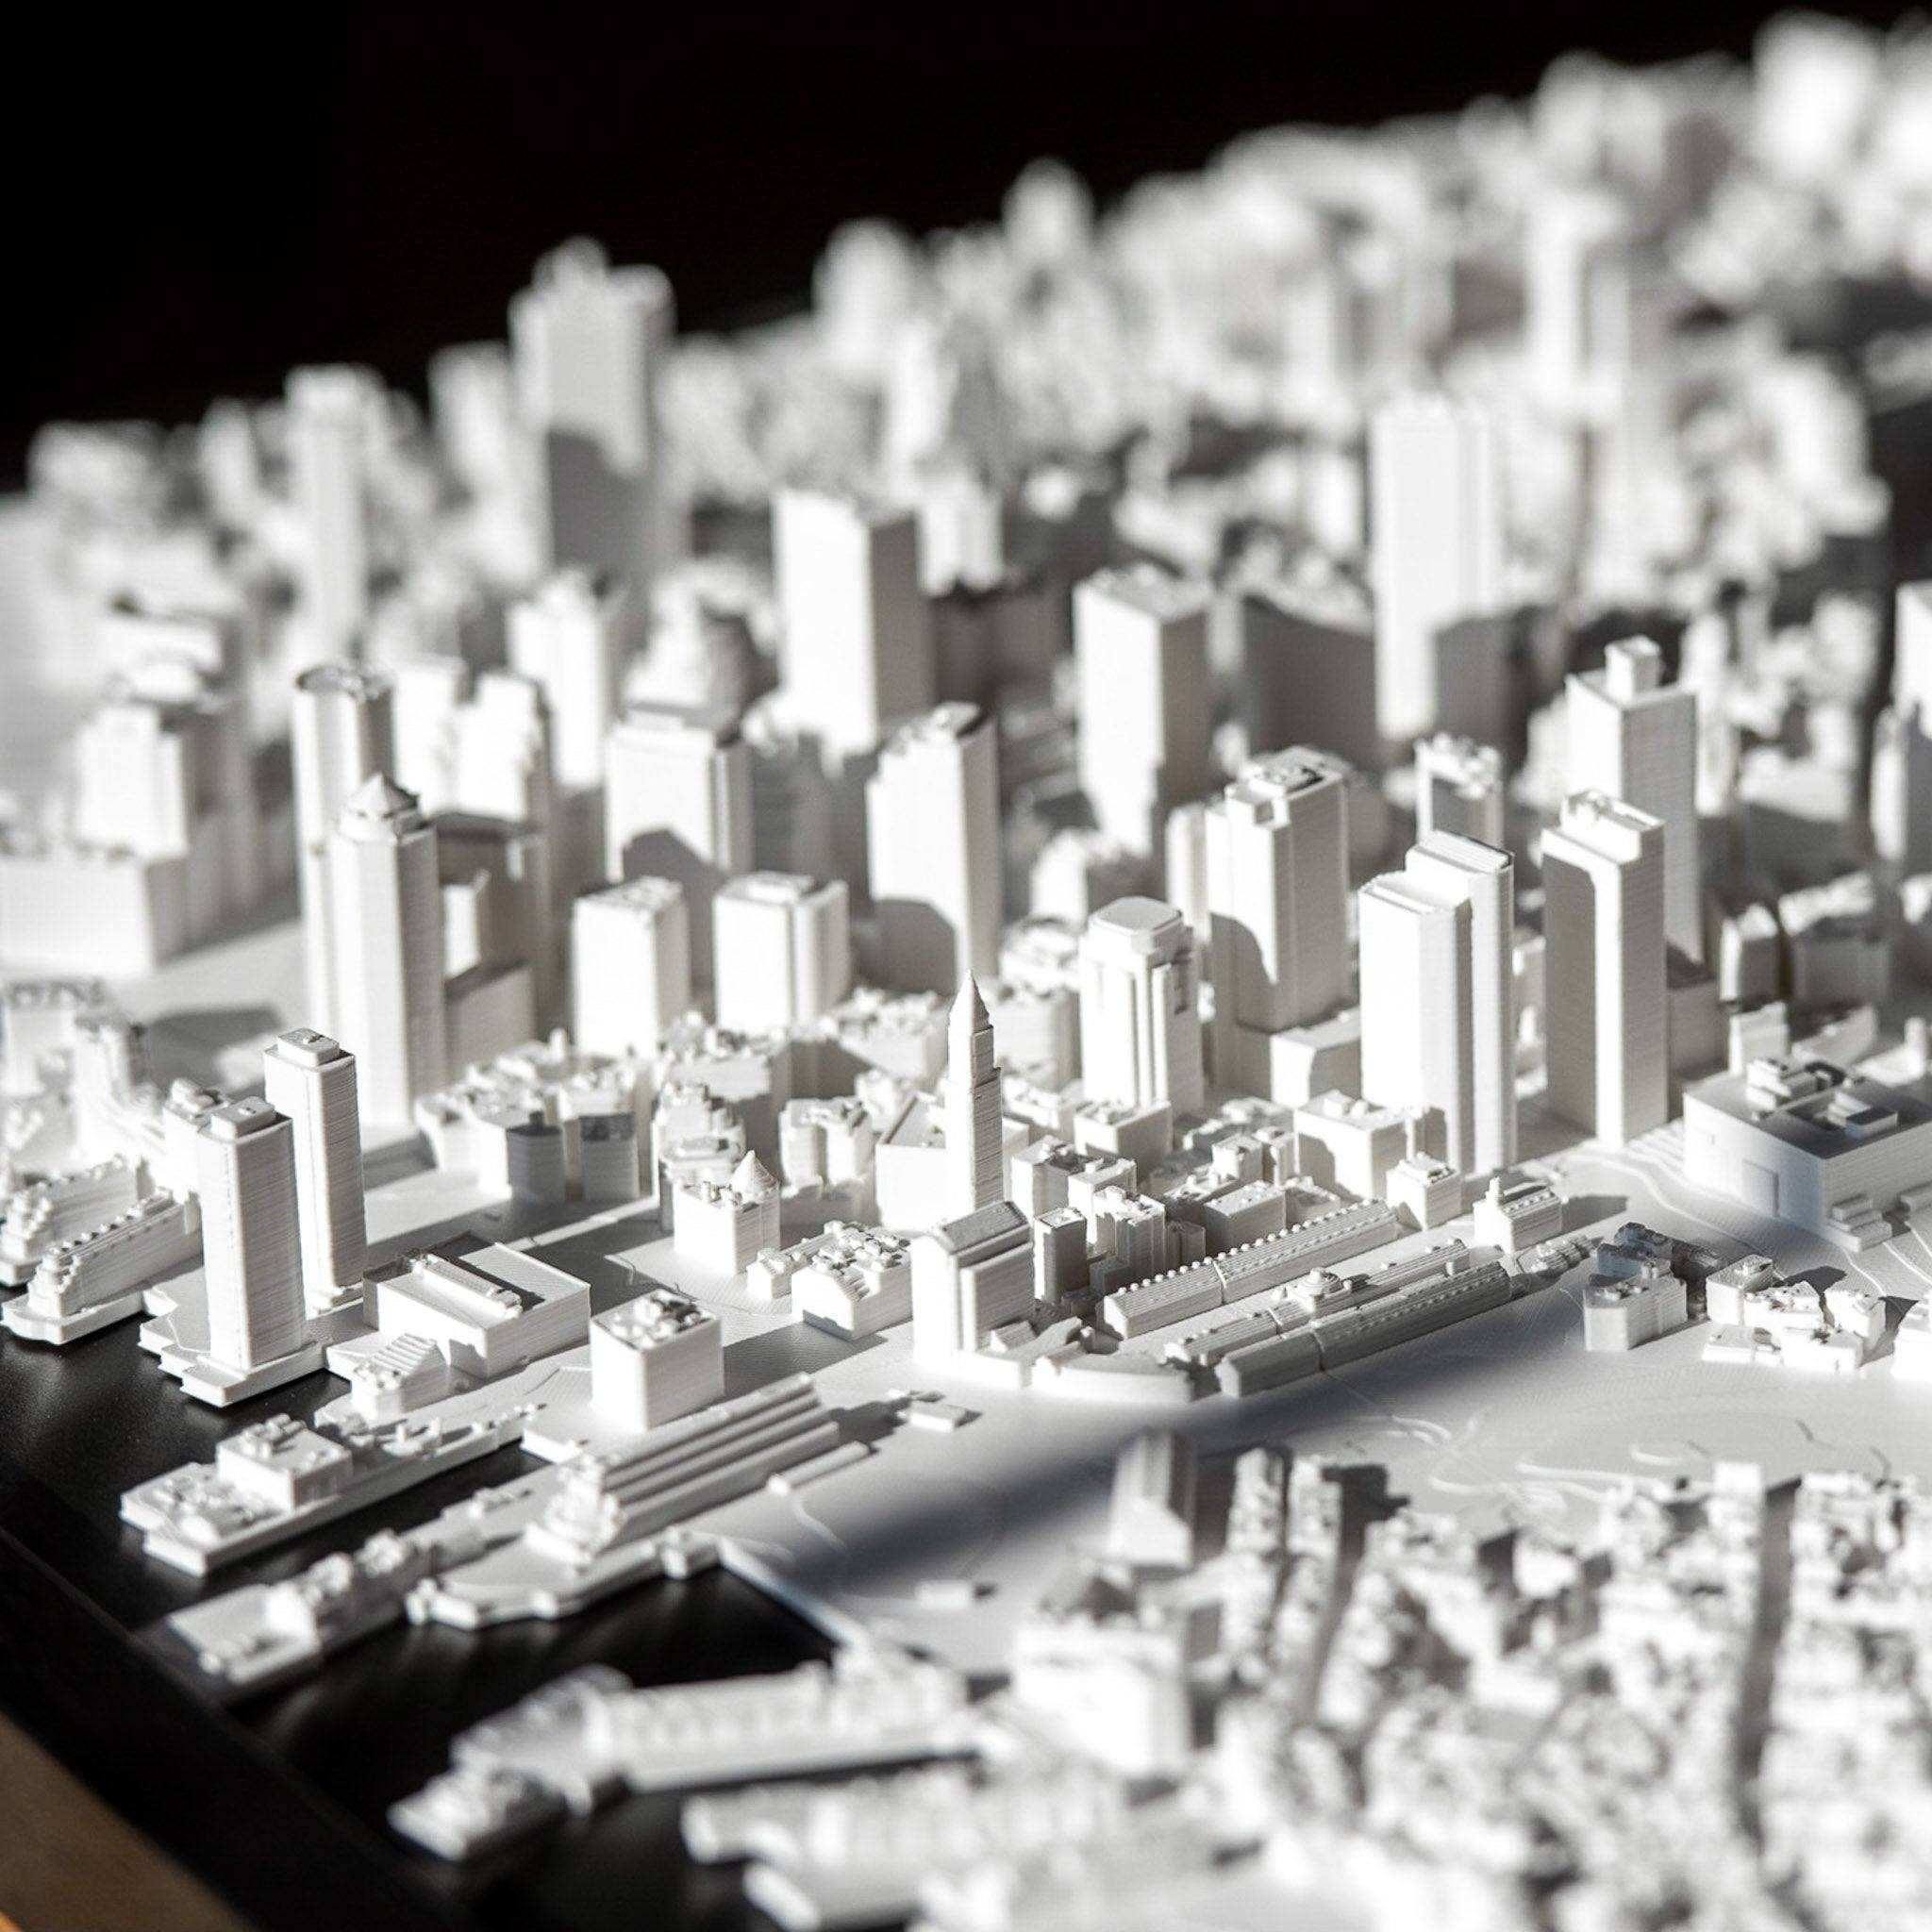 Boston Frame 3D City Model America, Frame - CITYFRAMES